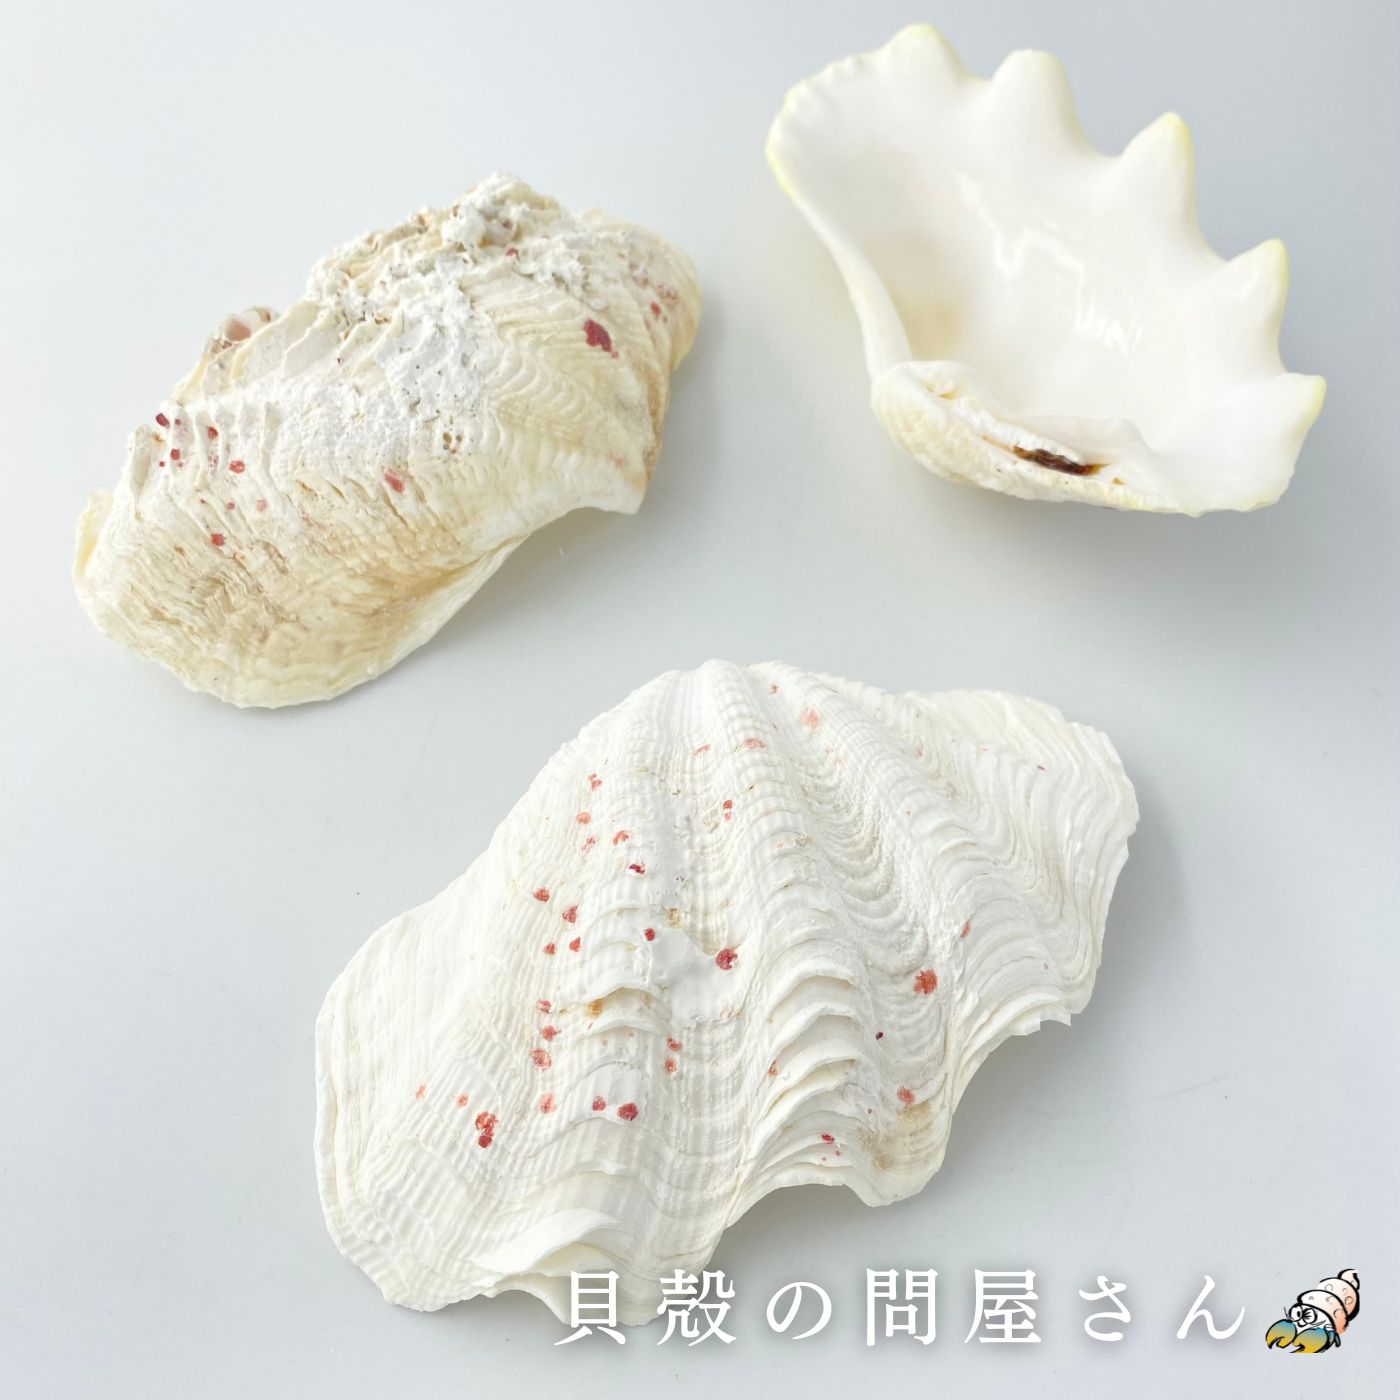 シャコガイ片面【約15〜17cm/3枚入】貝殻・貝・シャコガイ